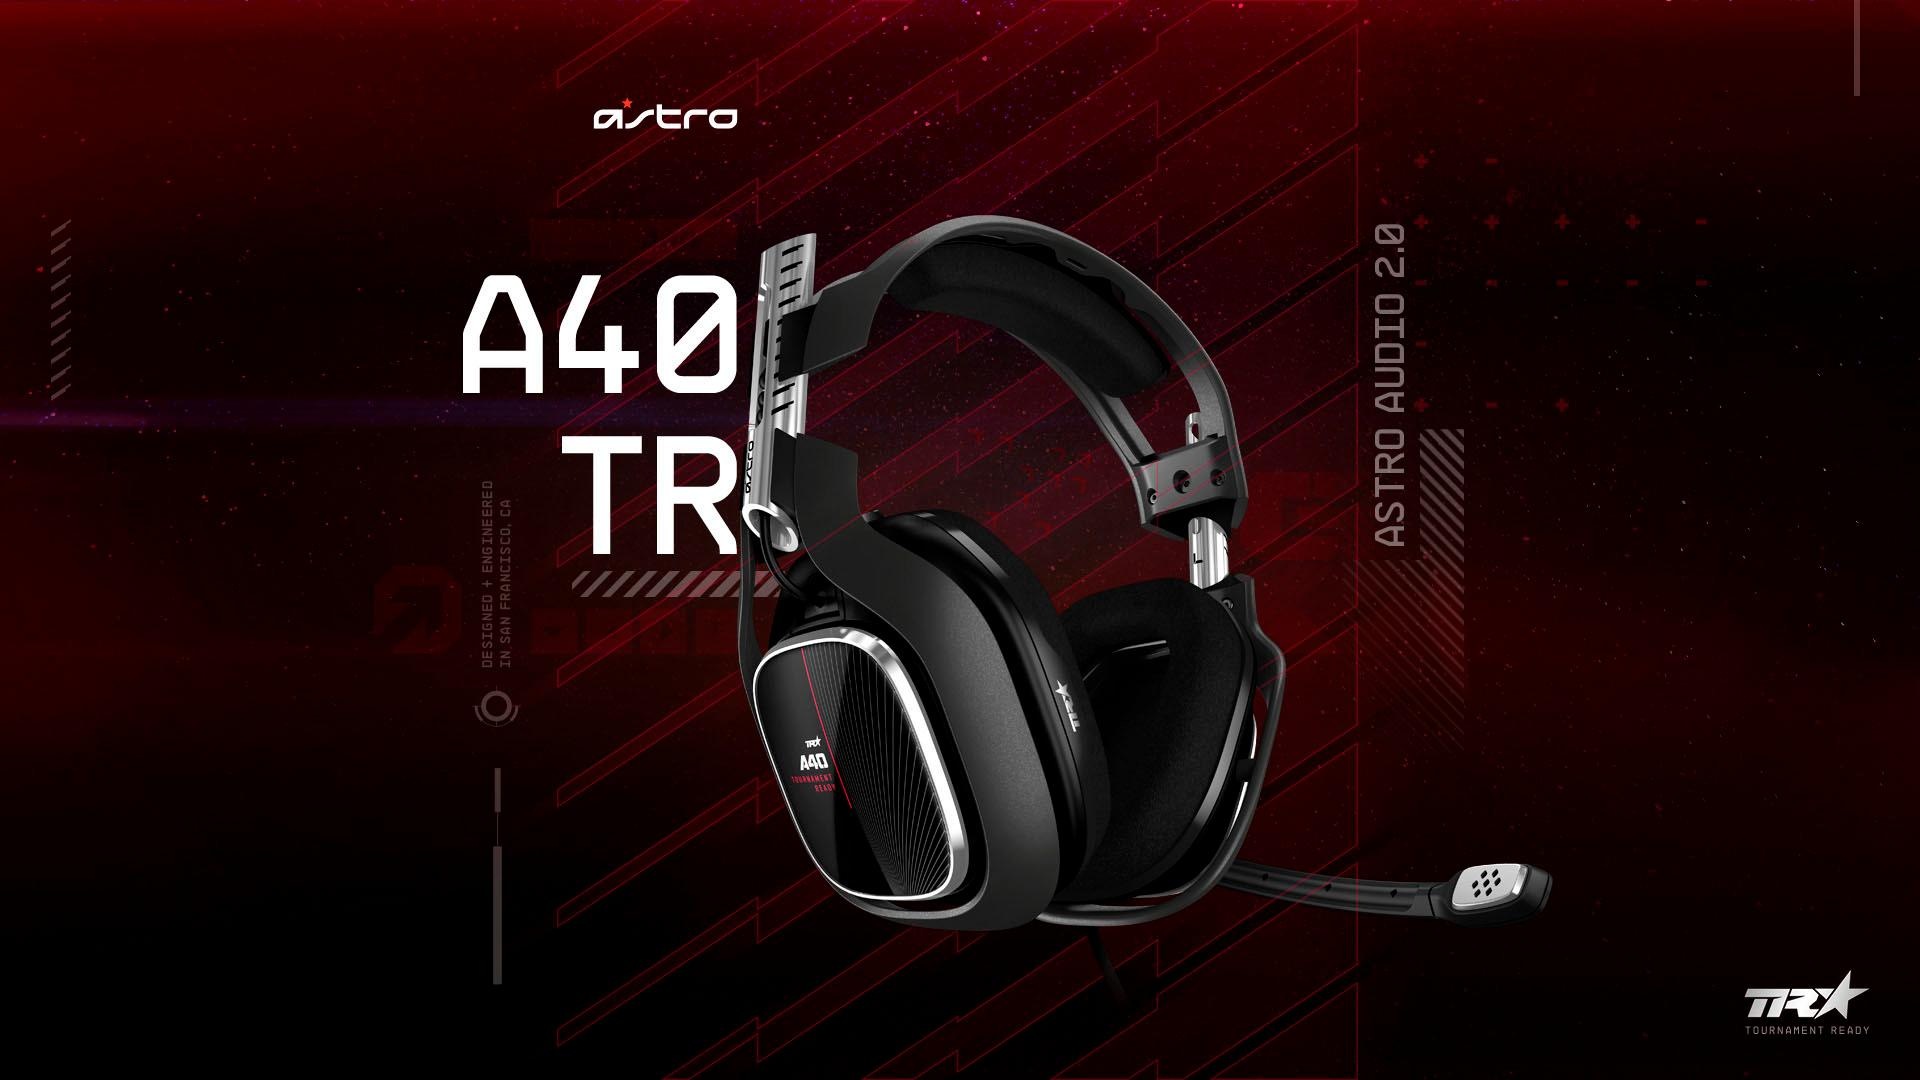 ASTRO »A40 TR -NEU- (Xbox One, PC, PS4)« Headset jetzt kaufen bei OTTO